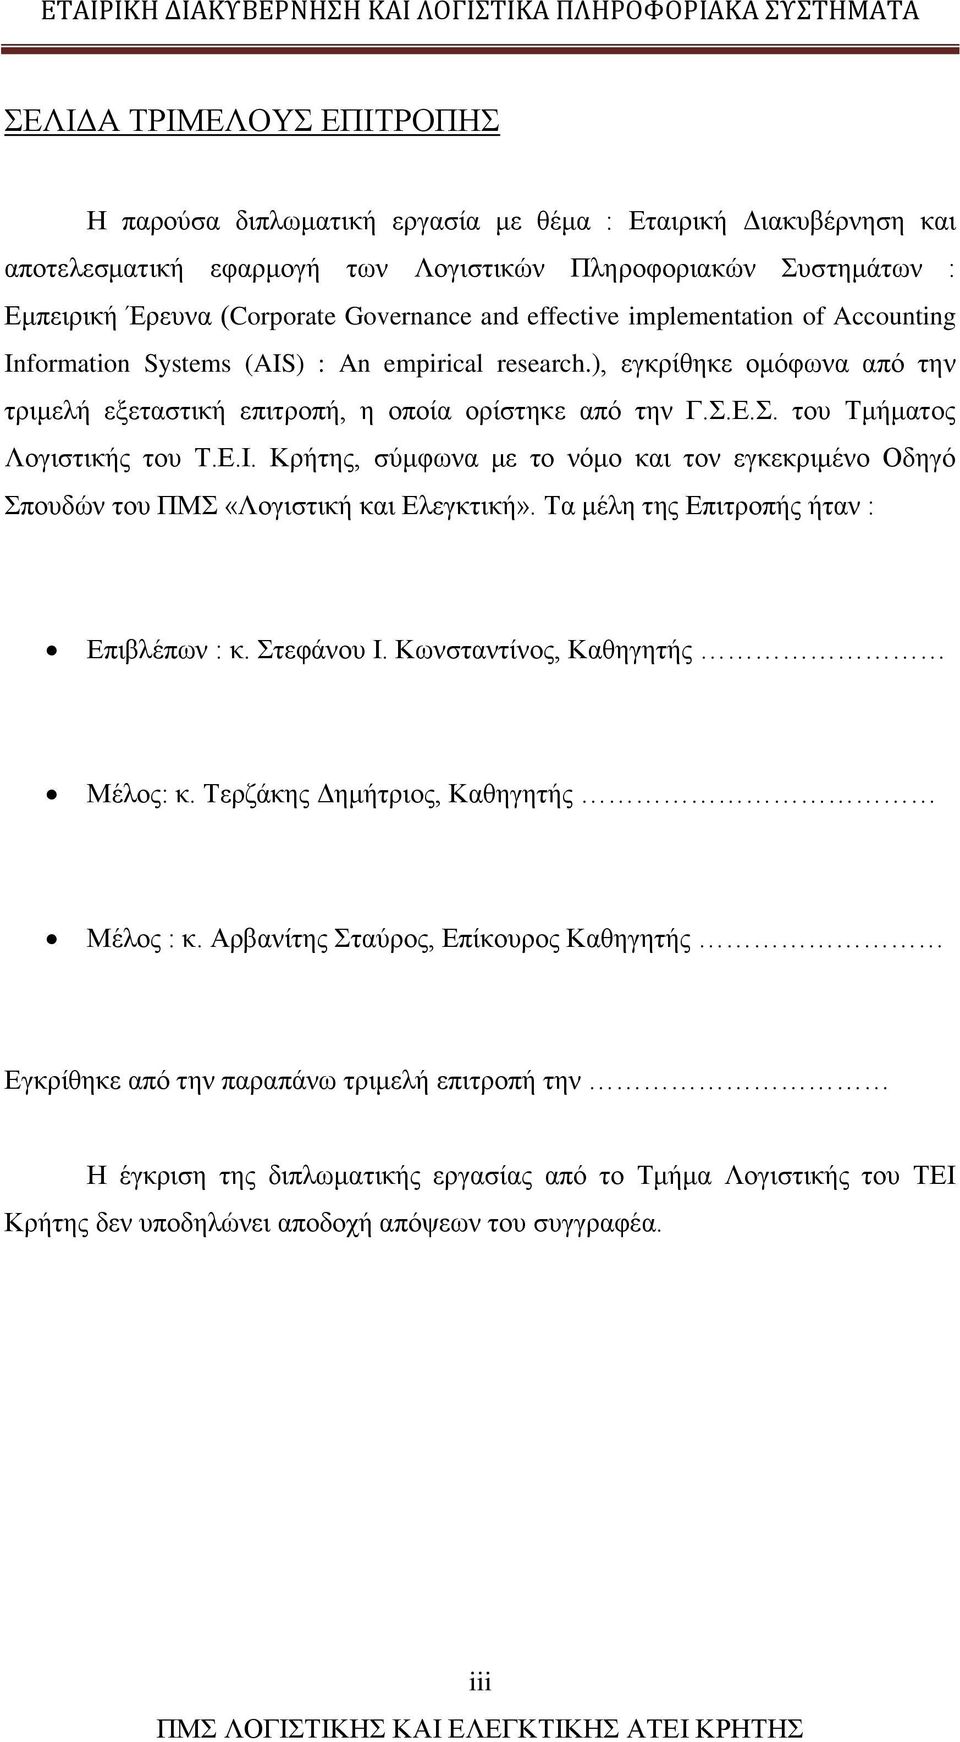 Ε.Σ. του Τμήματος Λογιστικής του Τ.Ε.Ι. Κρήτης, σύμφωνα με το νόμο και τον εγκεκριμένο Οδηγό Σπουδών του ΠΜΣ «Λογιστική και Ελεγκτική». Τα μέλη της Επιτροπής ήταν : Επιβλέπων : κ. Στεφάνου Ι.